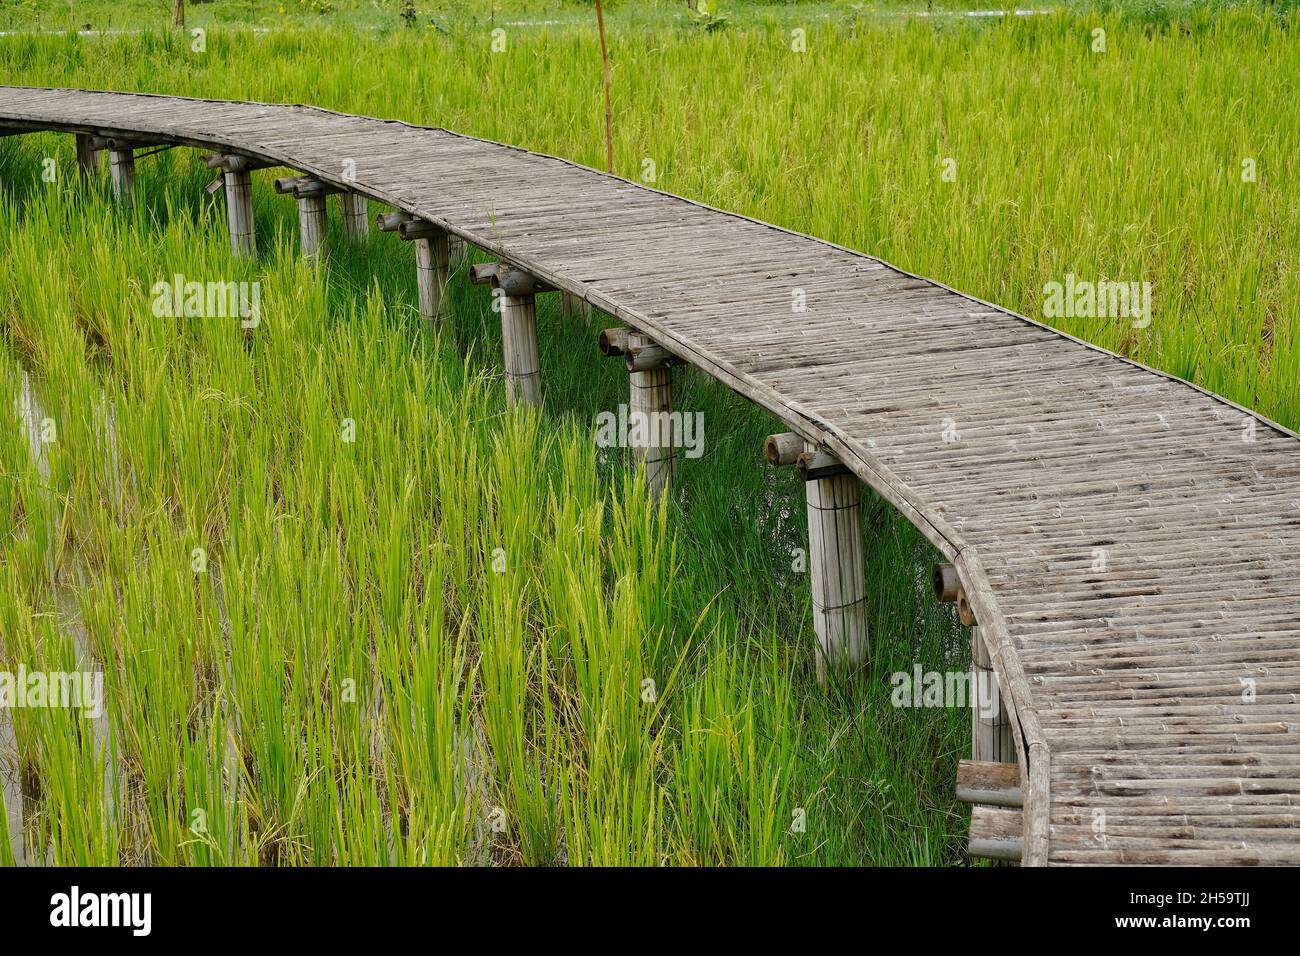 Un champ de riz vert avec une ancienne passerelle en bambou le long du chemin de la ferme.Vue pittoresque et verdoyante dans la campagne de la Thaïlande. Banque D'Images